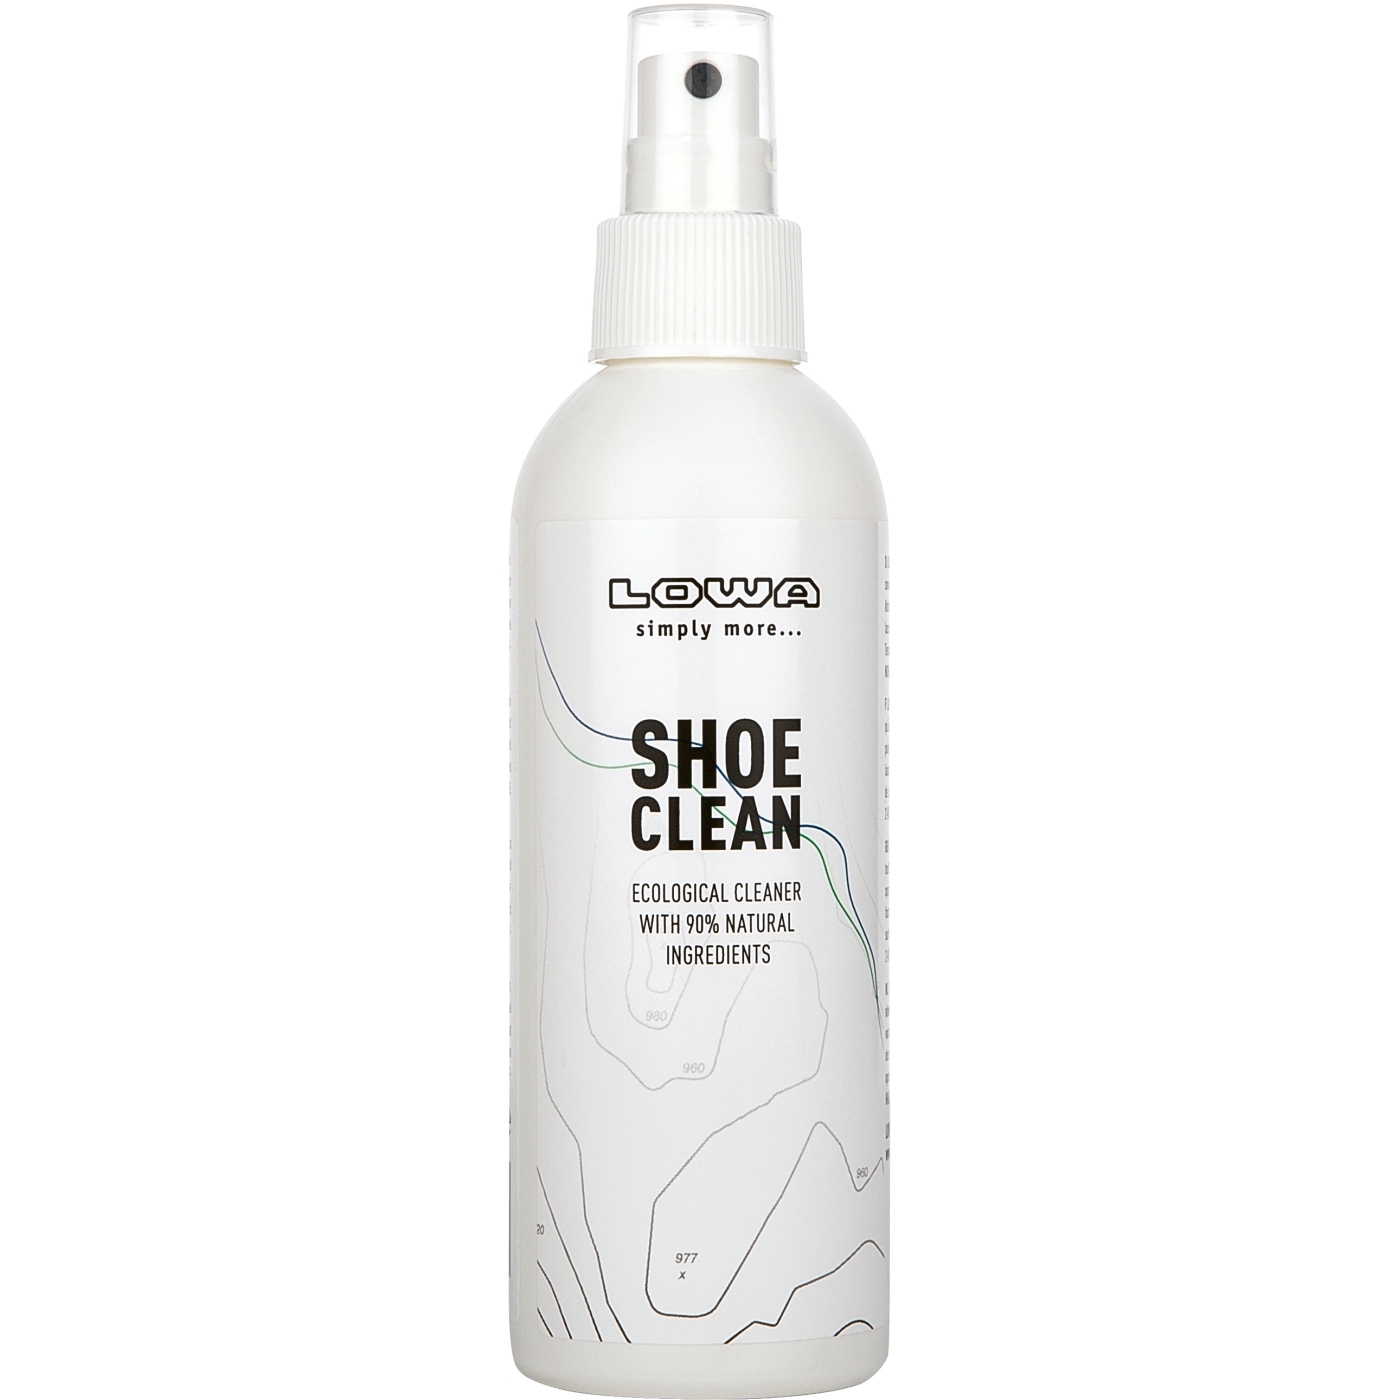 Productfoto van LOWA Shoe Clean Reinigingsmiddelen voor Schoenen - 200ml